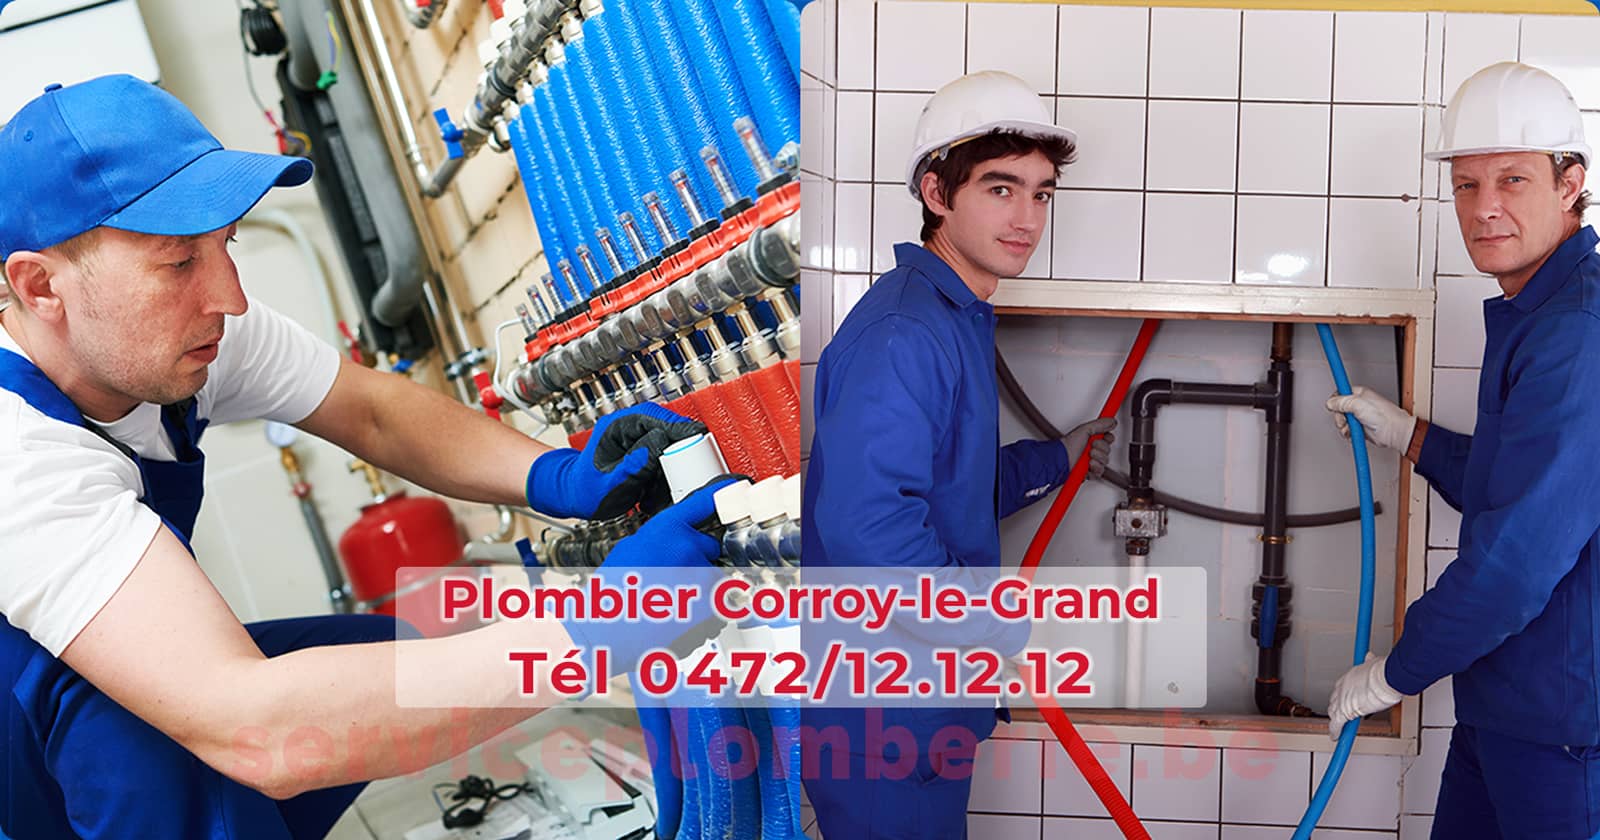 Plombier Corroy-le-Grand Agréé Professionnel Service Plomberie Tél 0472/12.12.12